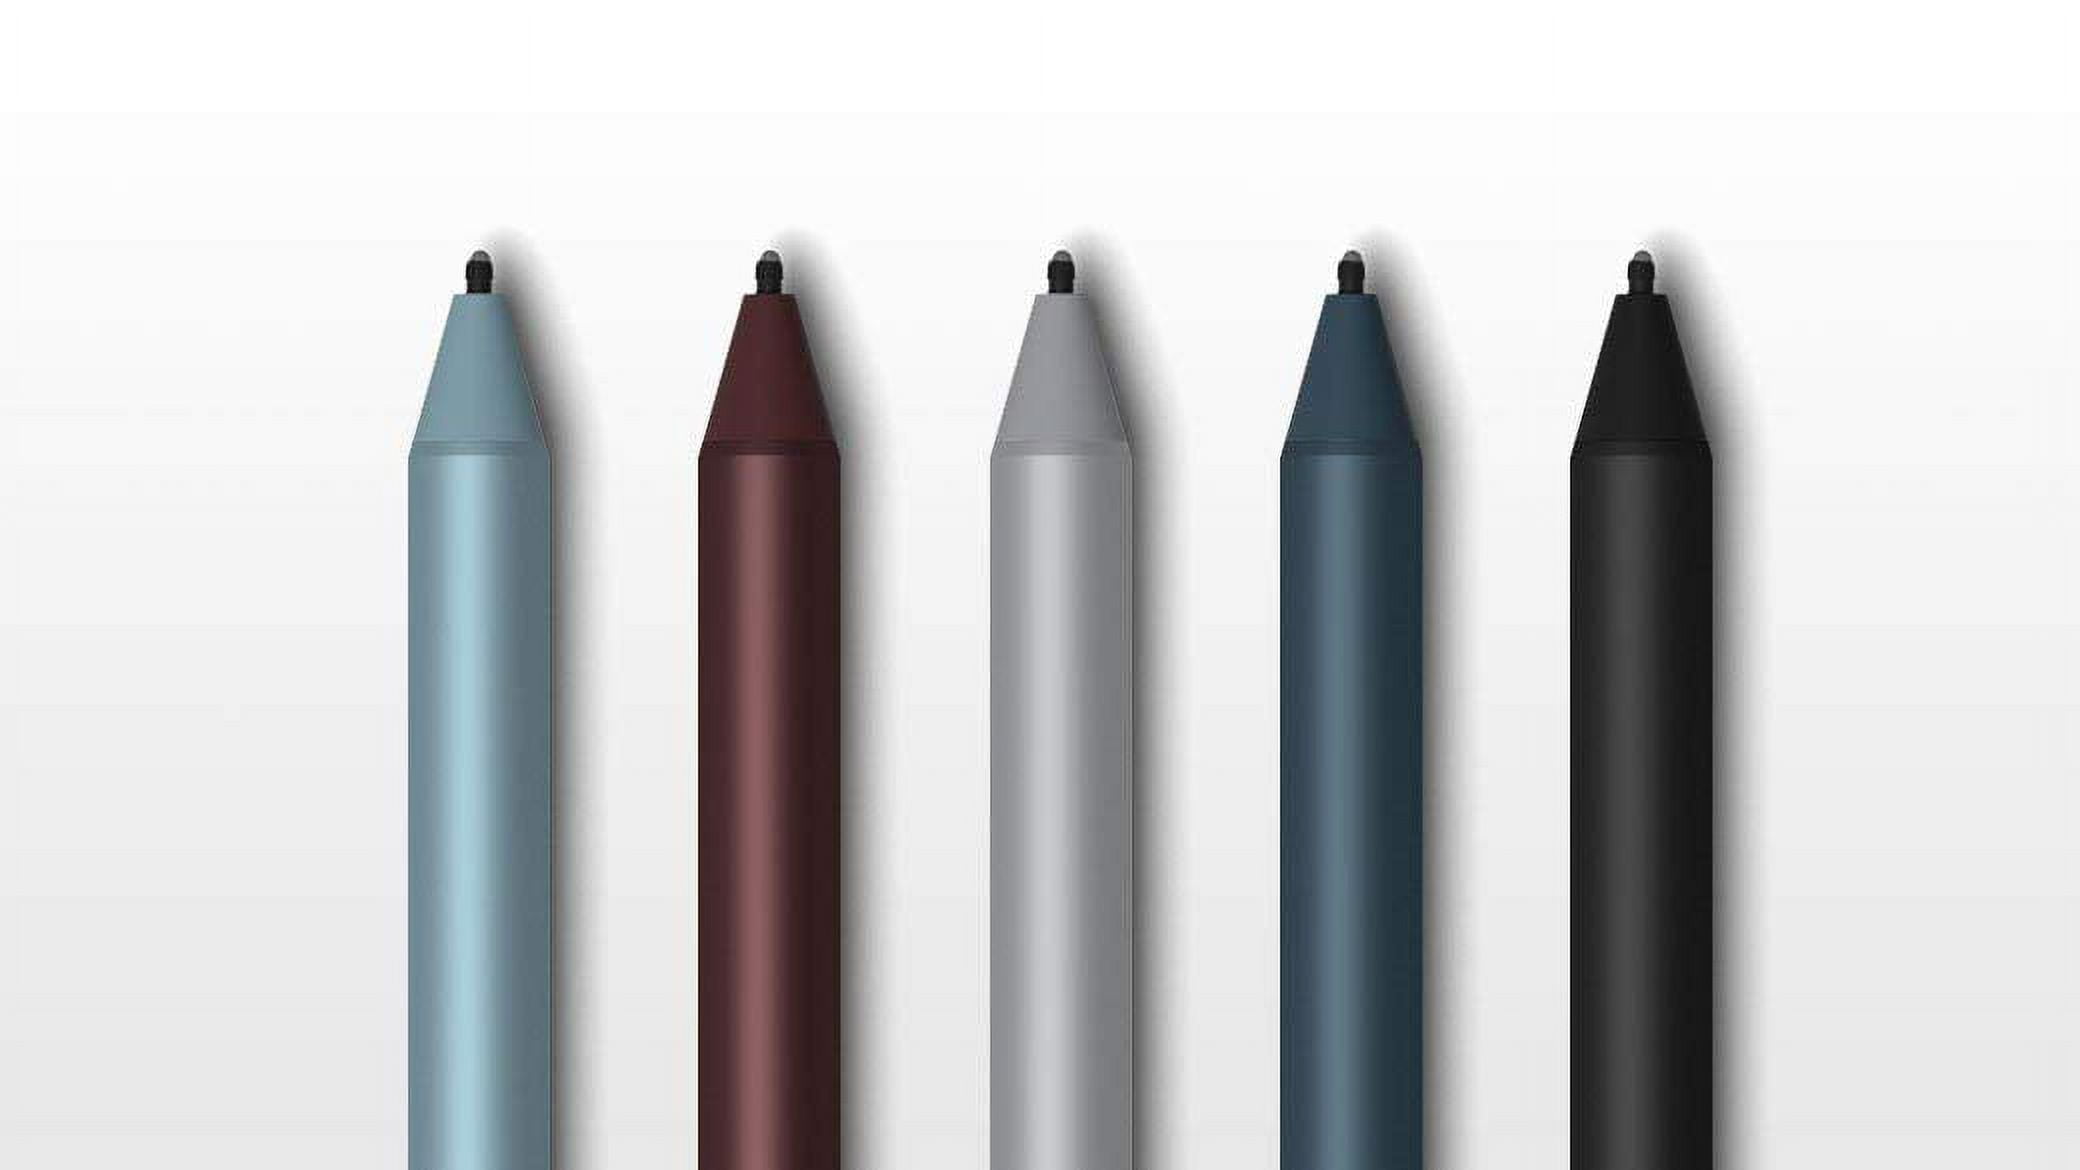 Microsoft Surface Pen, Poppy EYU-00041 Red